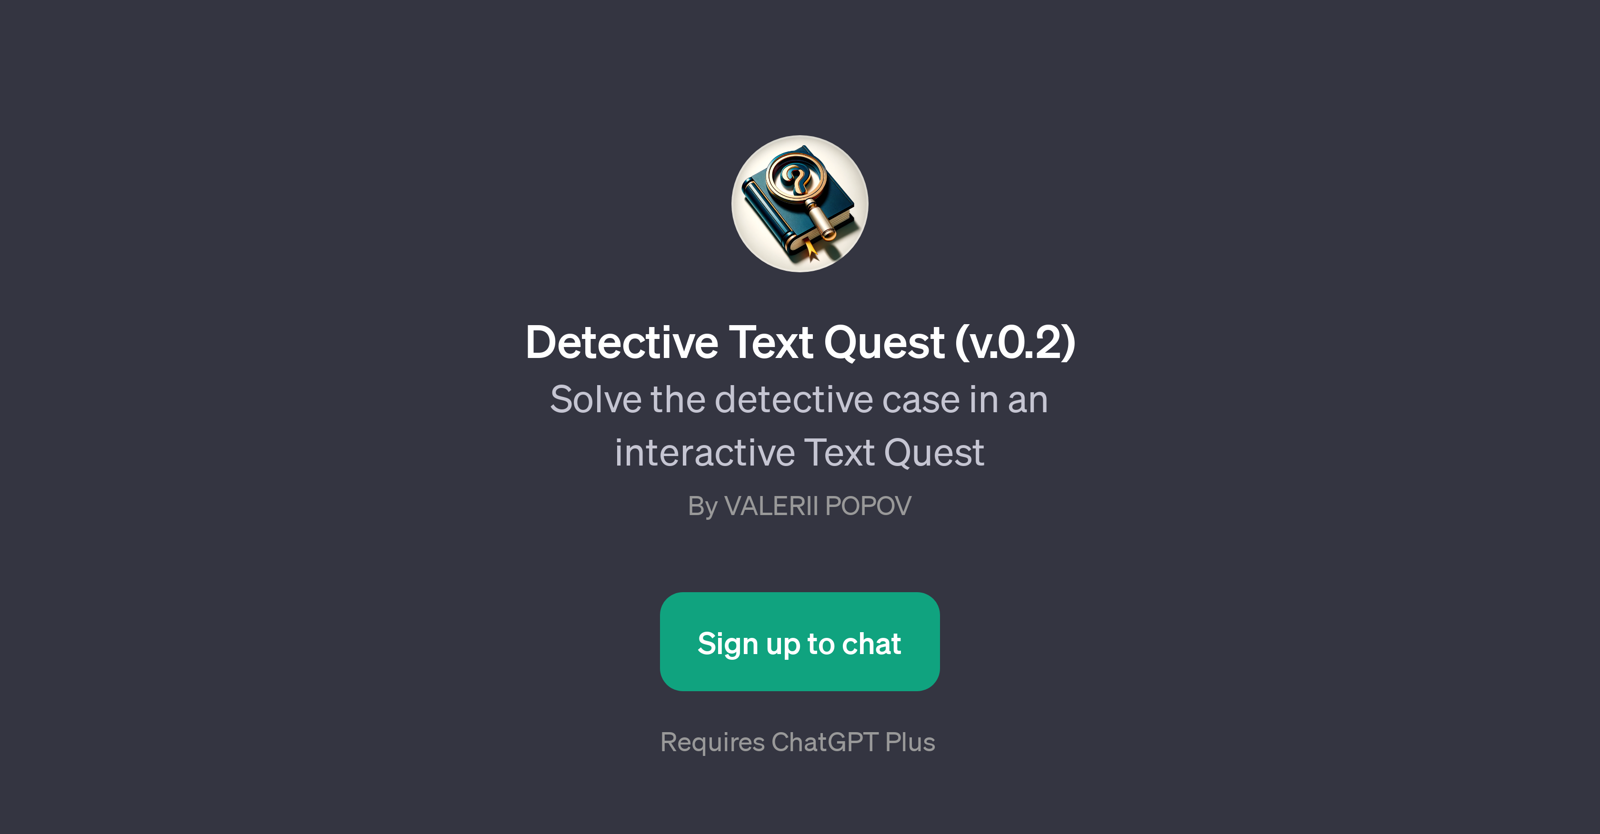 Detective Text Quest (v.0.2) website